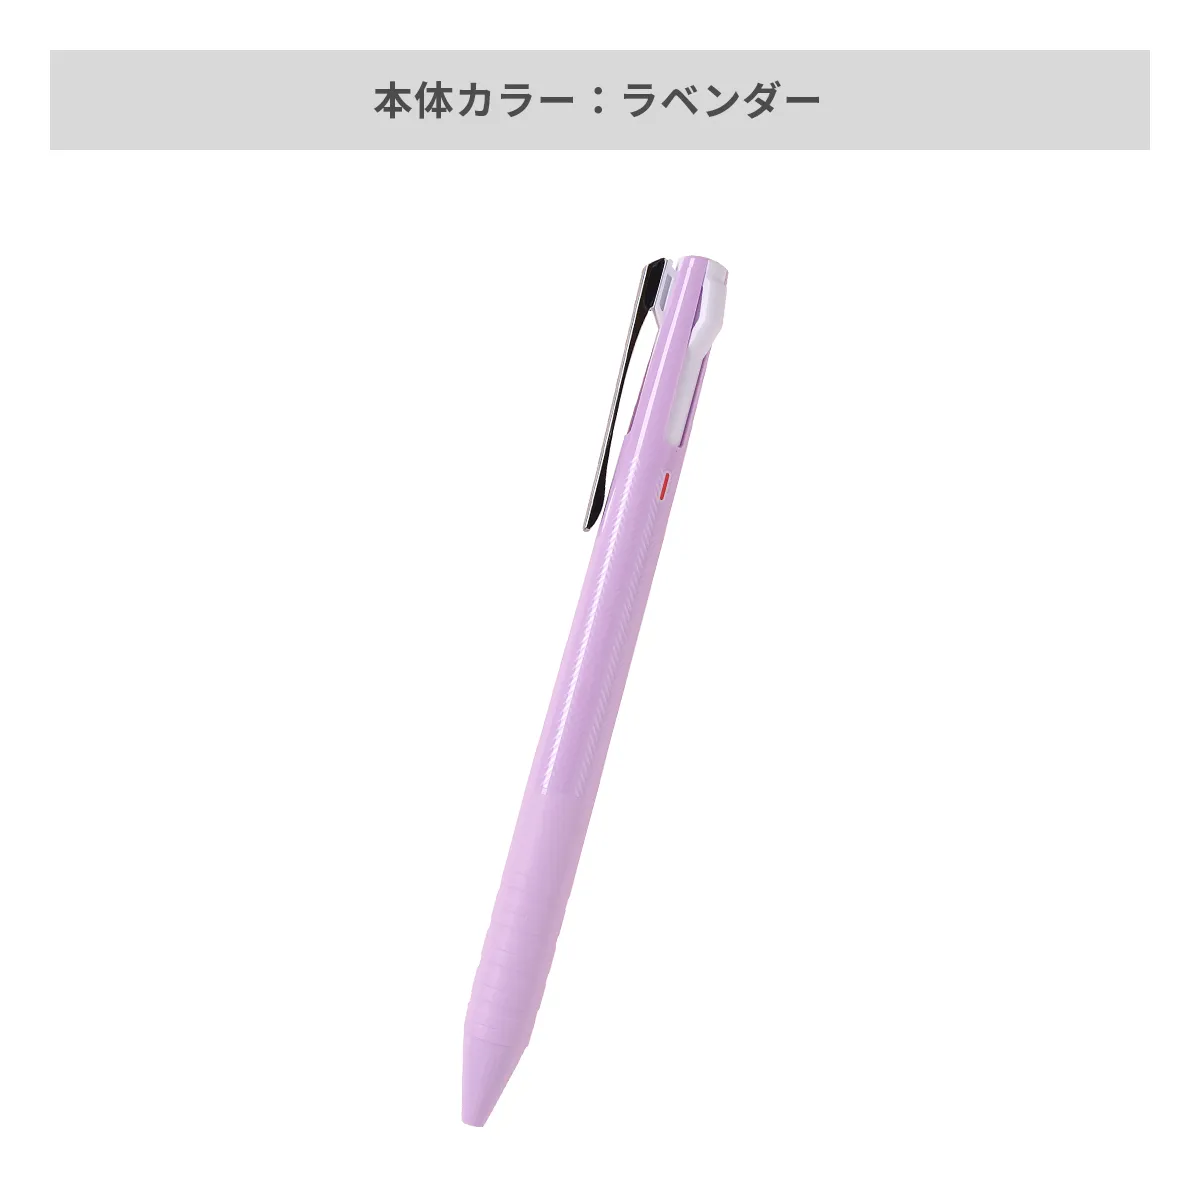 三菱鉛筆 ジェットストリーム スリムコンパクト 3色ボールペン 0.38mm【名入れボールペン / パッド印刷】 画像5